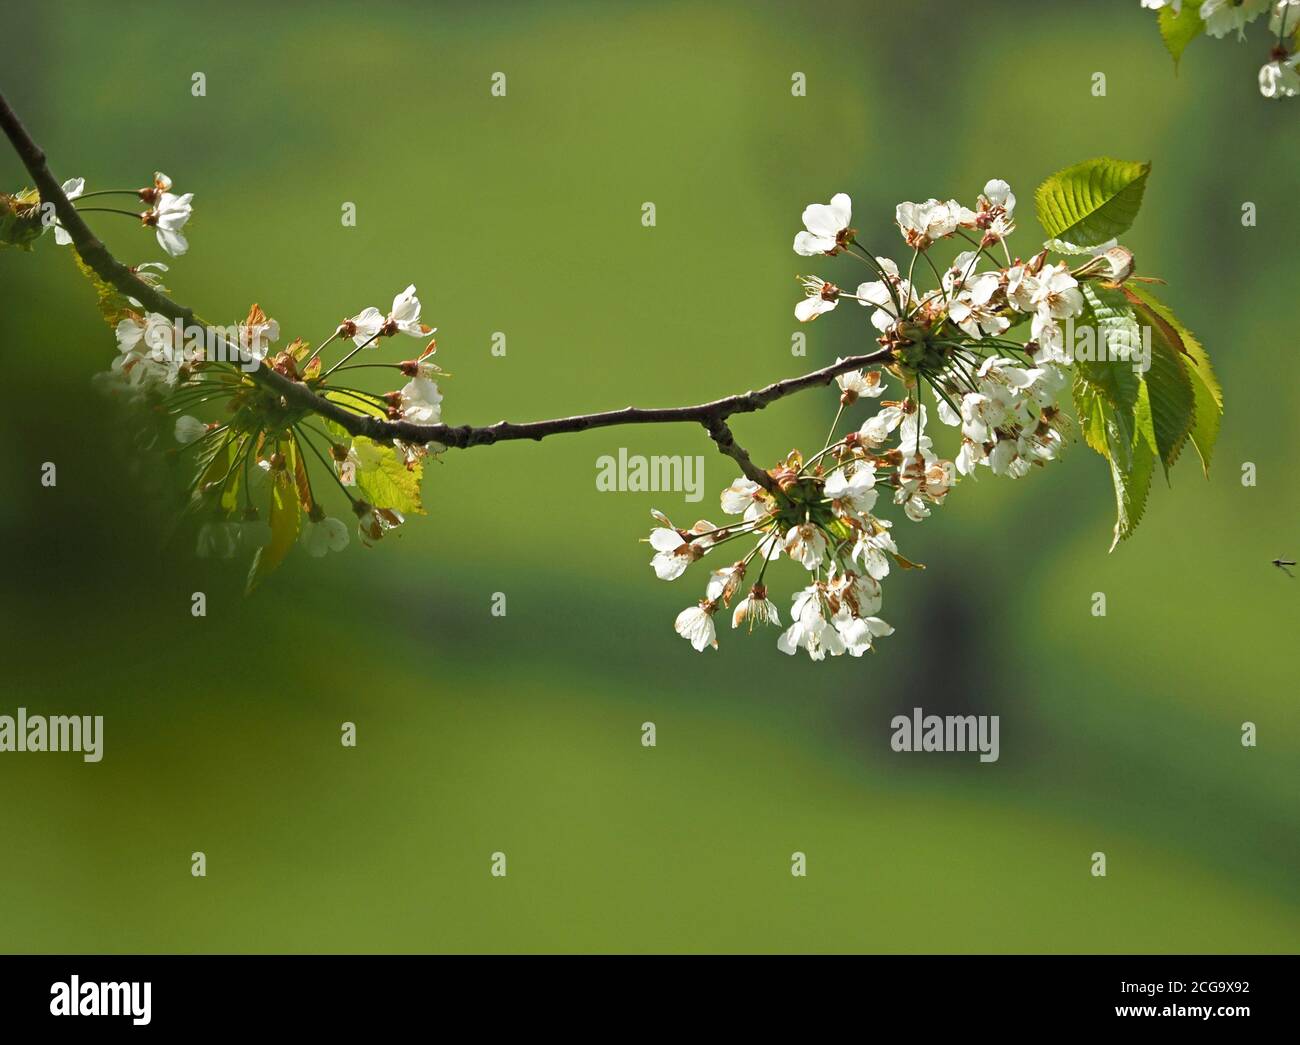 Piccoli fiori bianchi della fioritura primaverile dell'albero ornamentale di ciliegia (specie Prunus) contrastano con il verde tenero di fondo e il fogliame fresco Inghilterra, UK Foto Stock